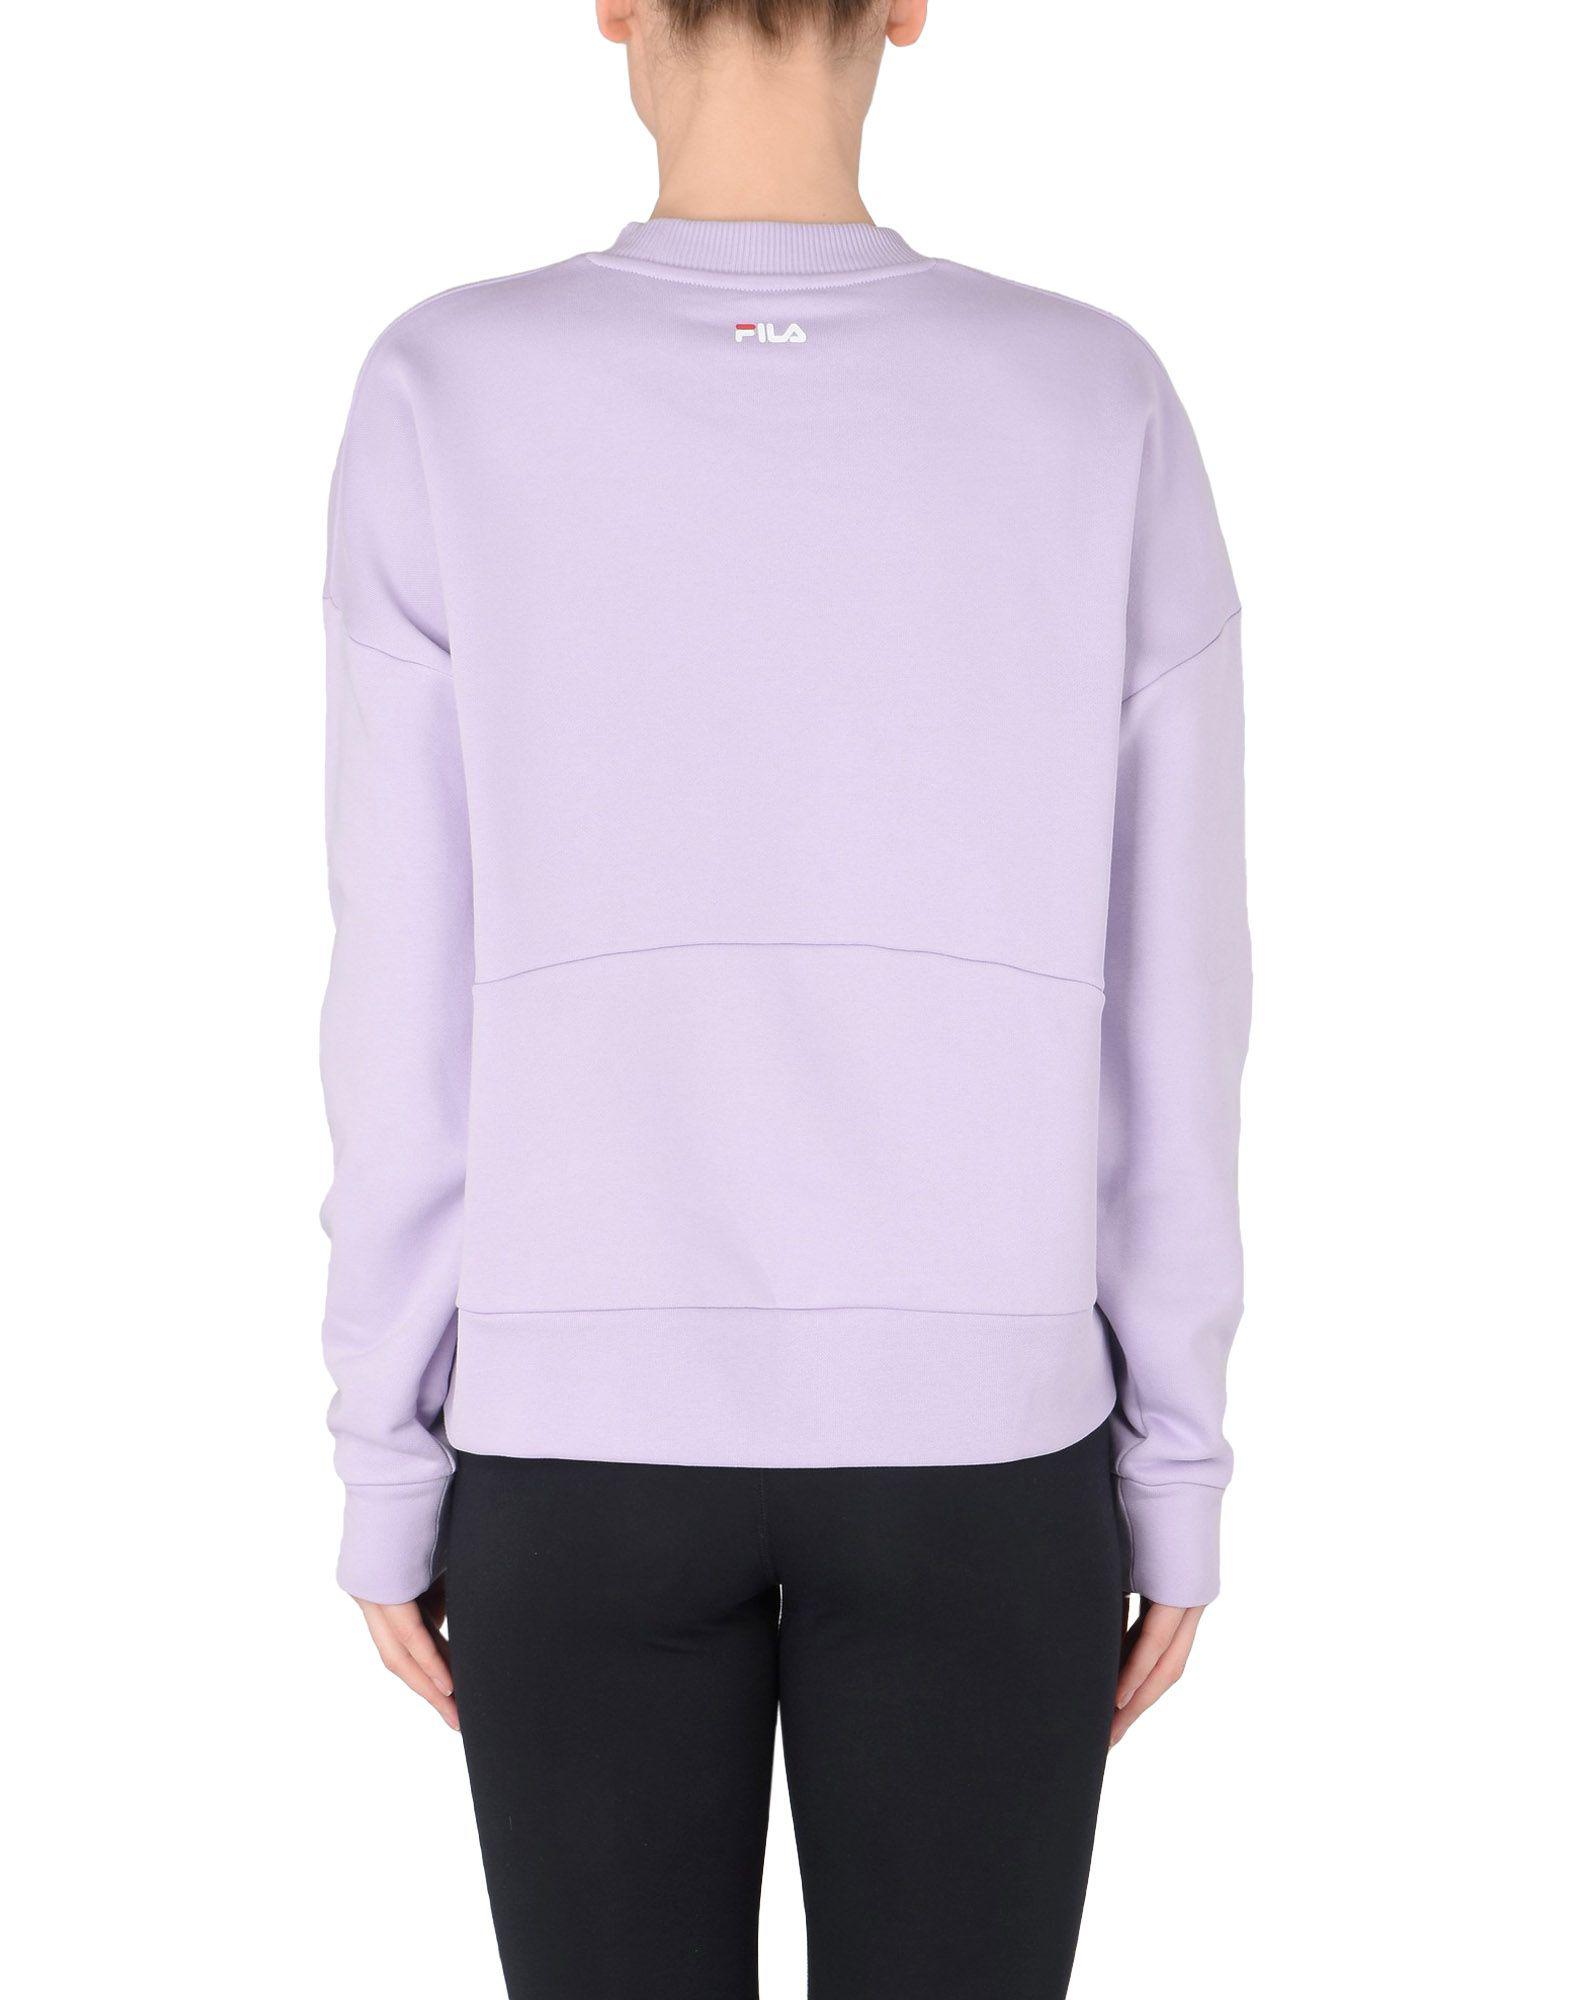 Fila Cotton Sweatshirt in Lilac (Purple) - Lyst